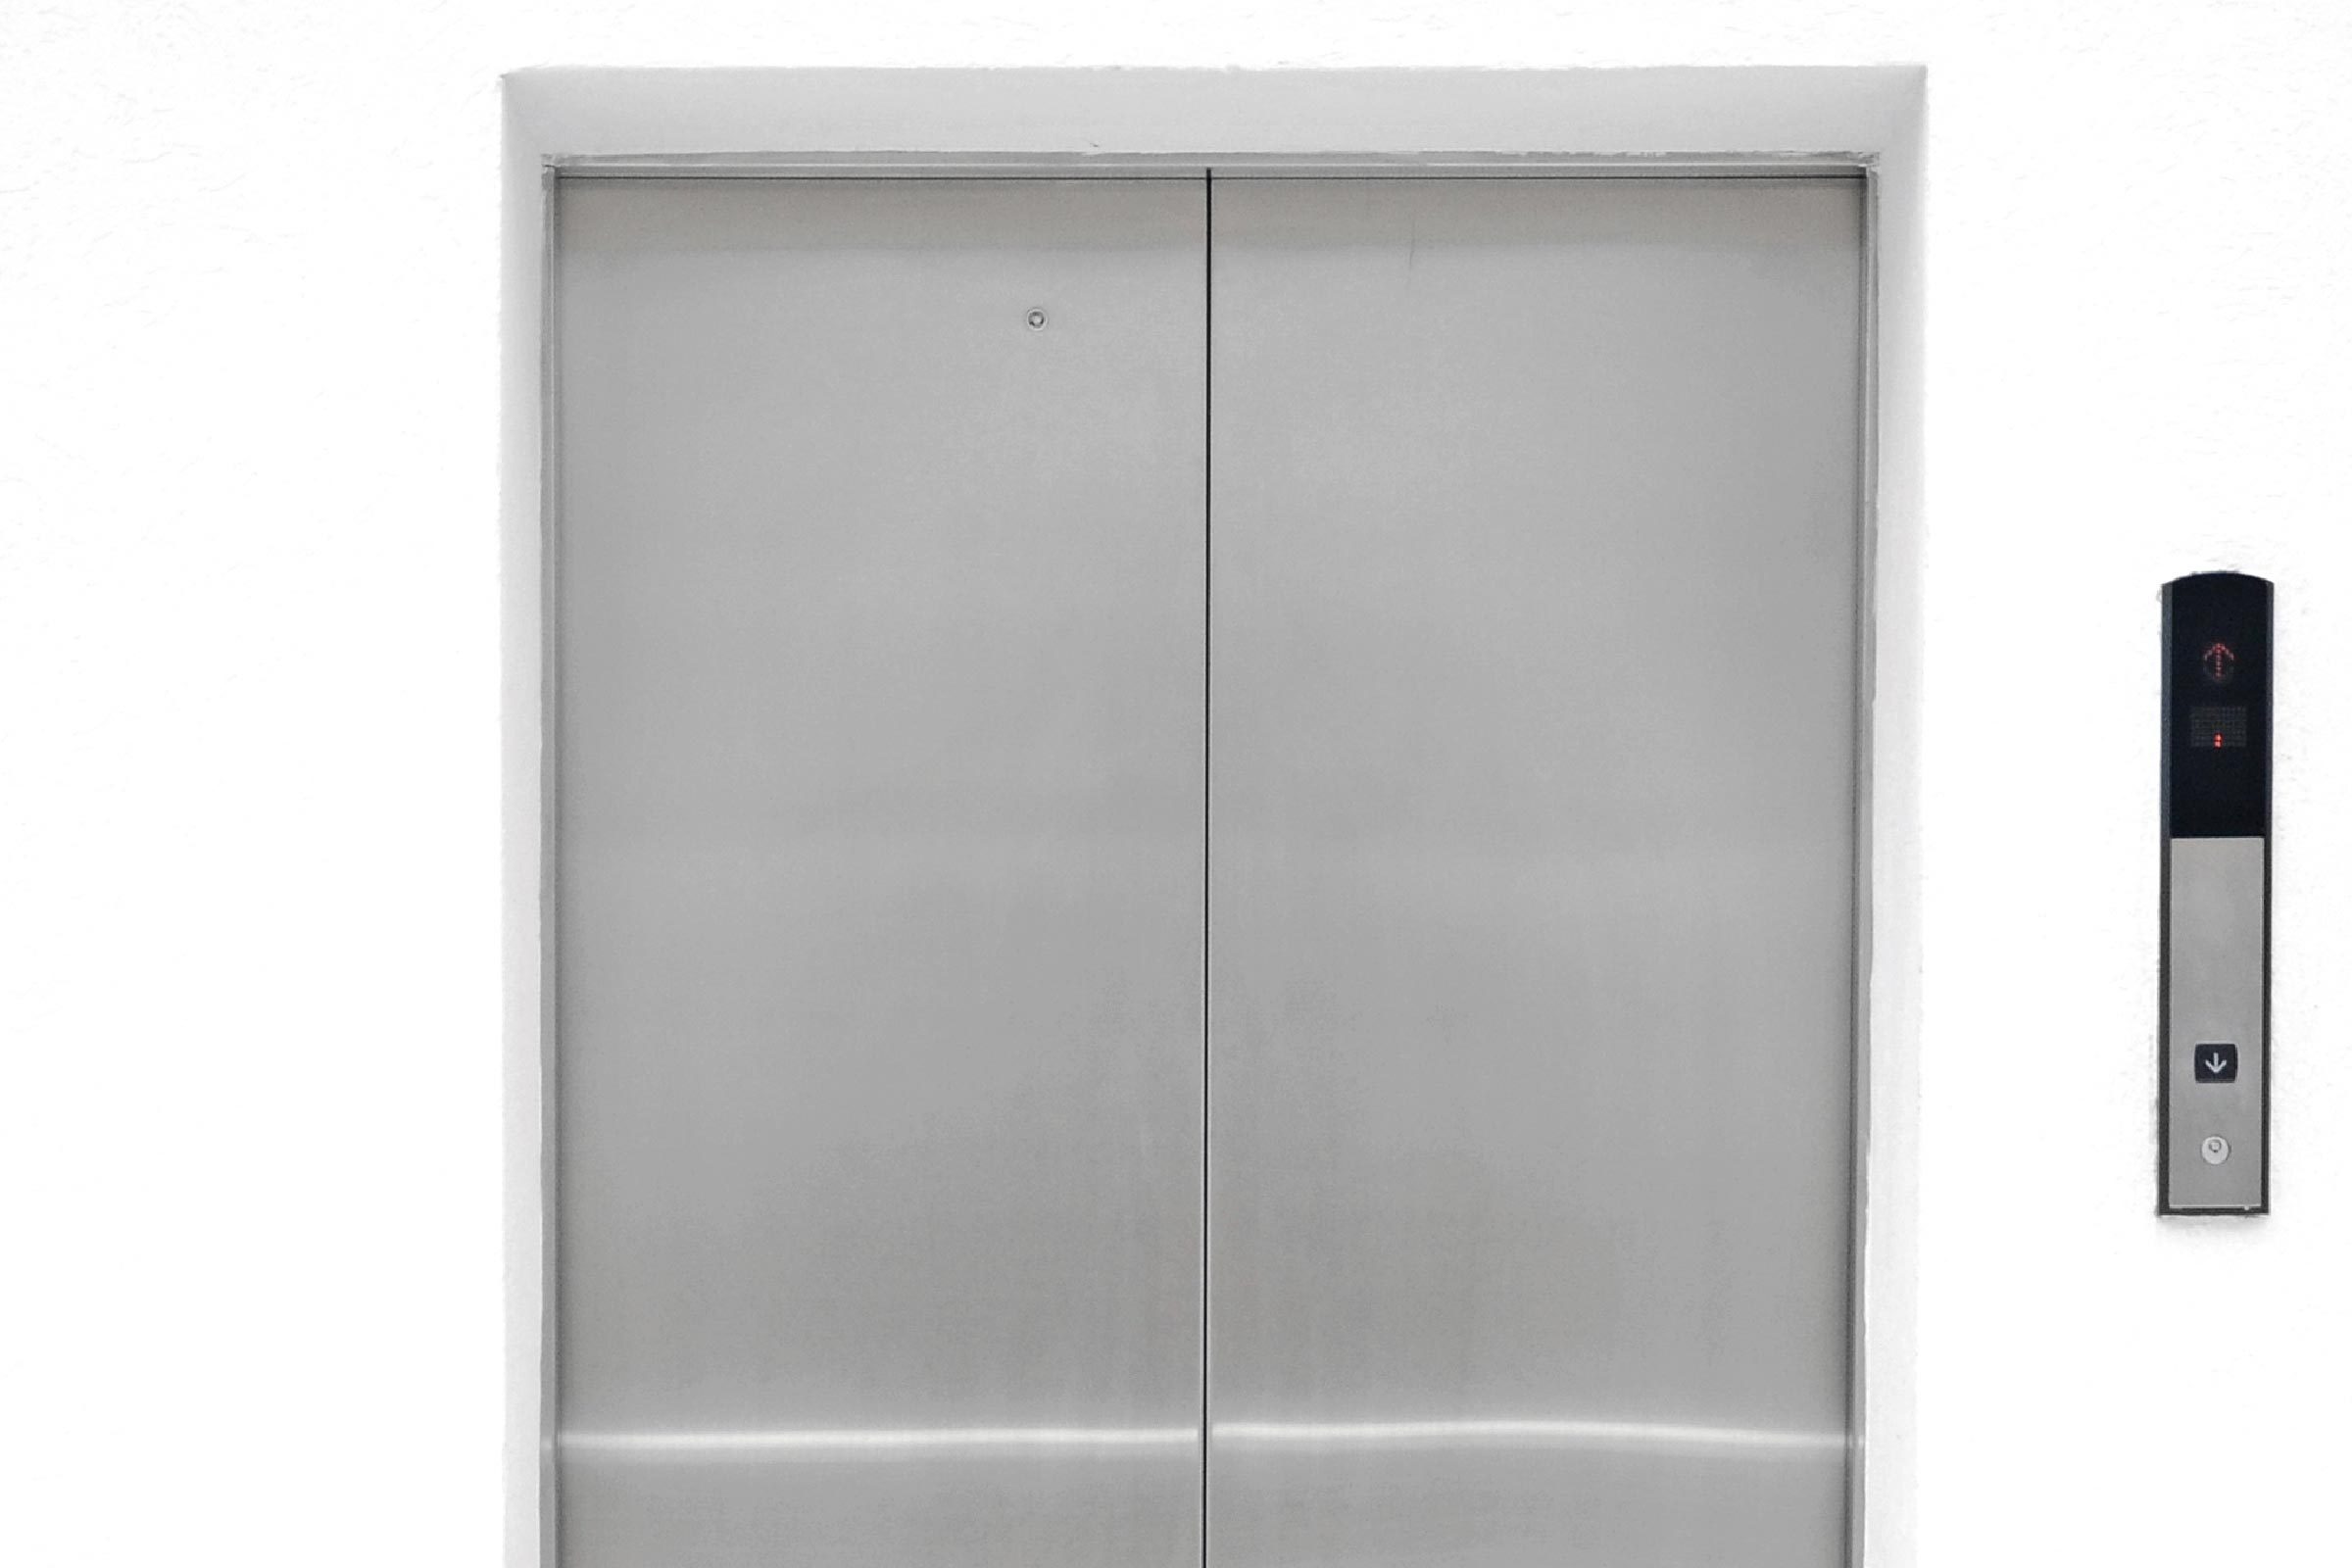 single elevator door